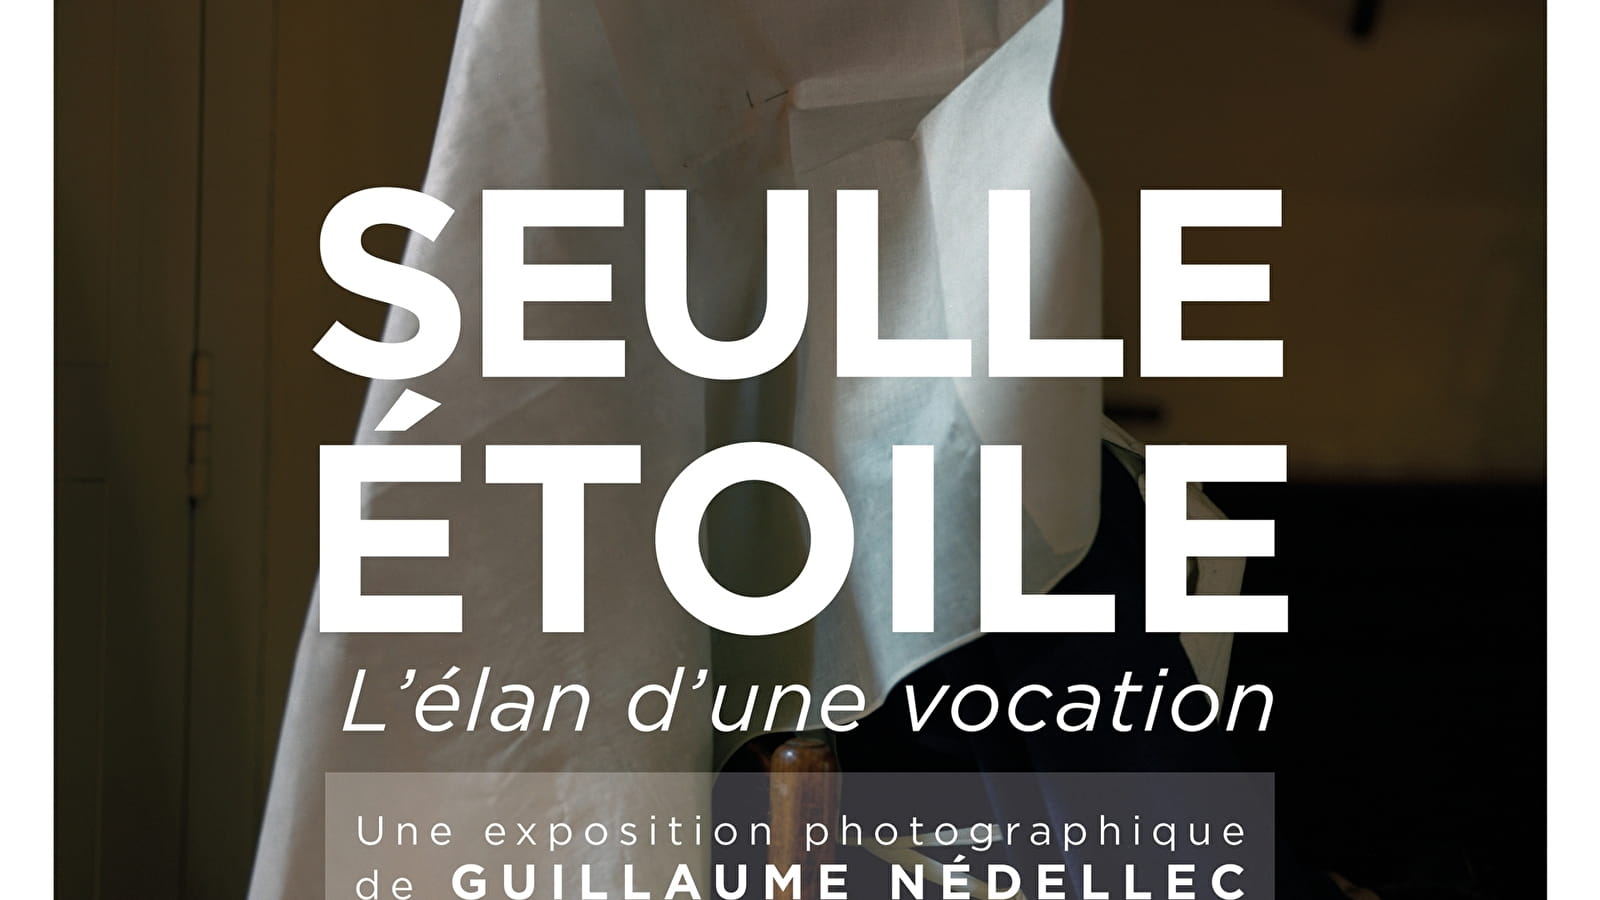 Hôtel-Dieu - Hospices de Beaune - Exhibition 'SEULLE ÉTOILE. The impulse of a vocation'.